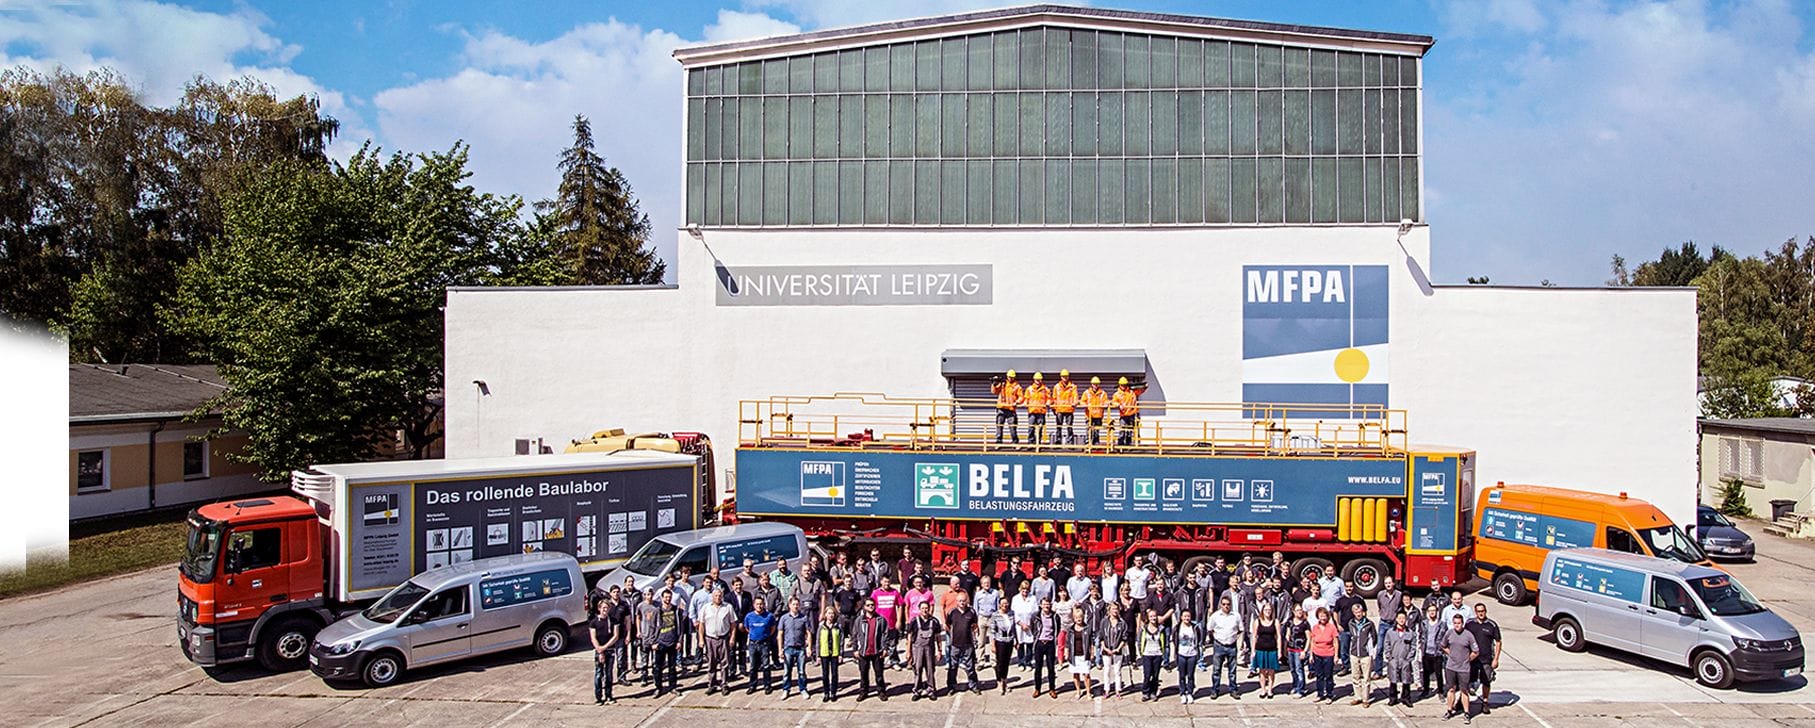 Gruppenbilder aller MFPA Mitarbeiter vor einer großen Prüfhalle und Firmenautos